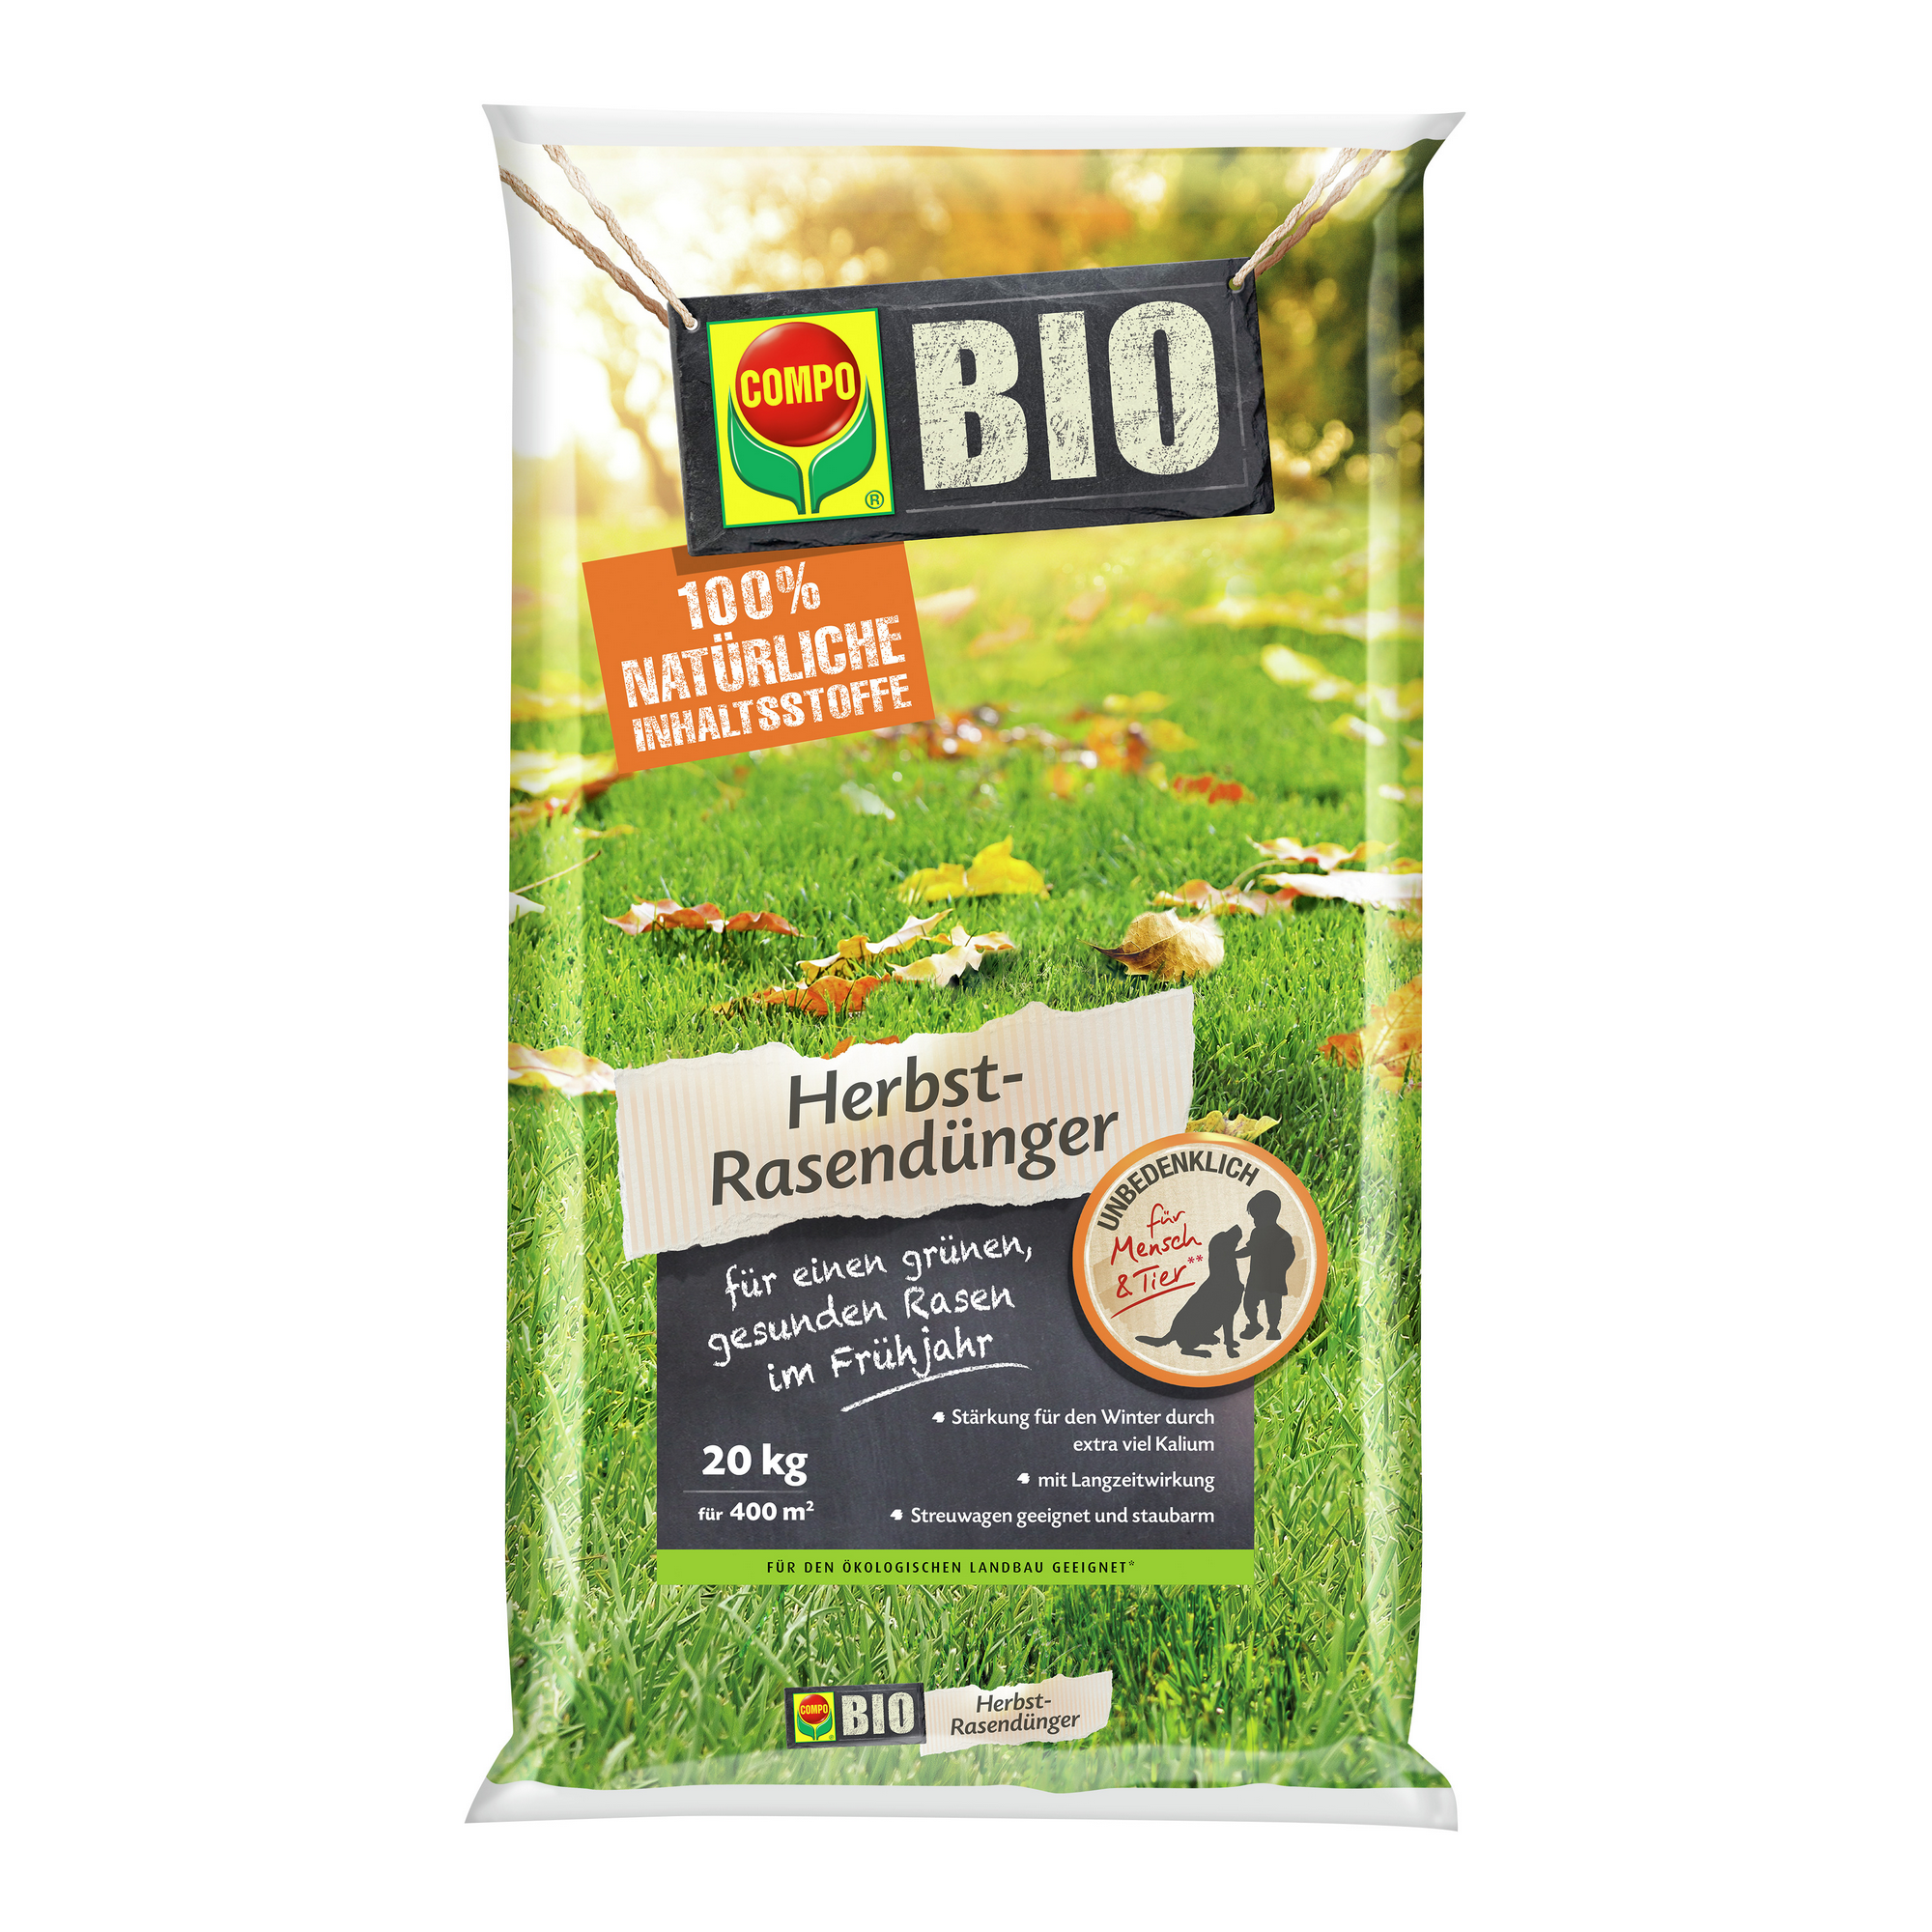 Bio Herbst-Rasendünger 20 kg für ca. 400 m² + product picture